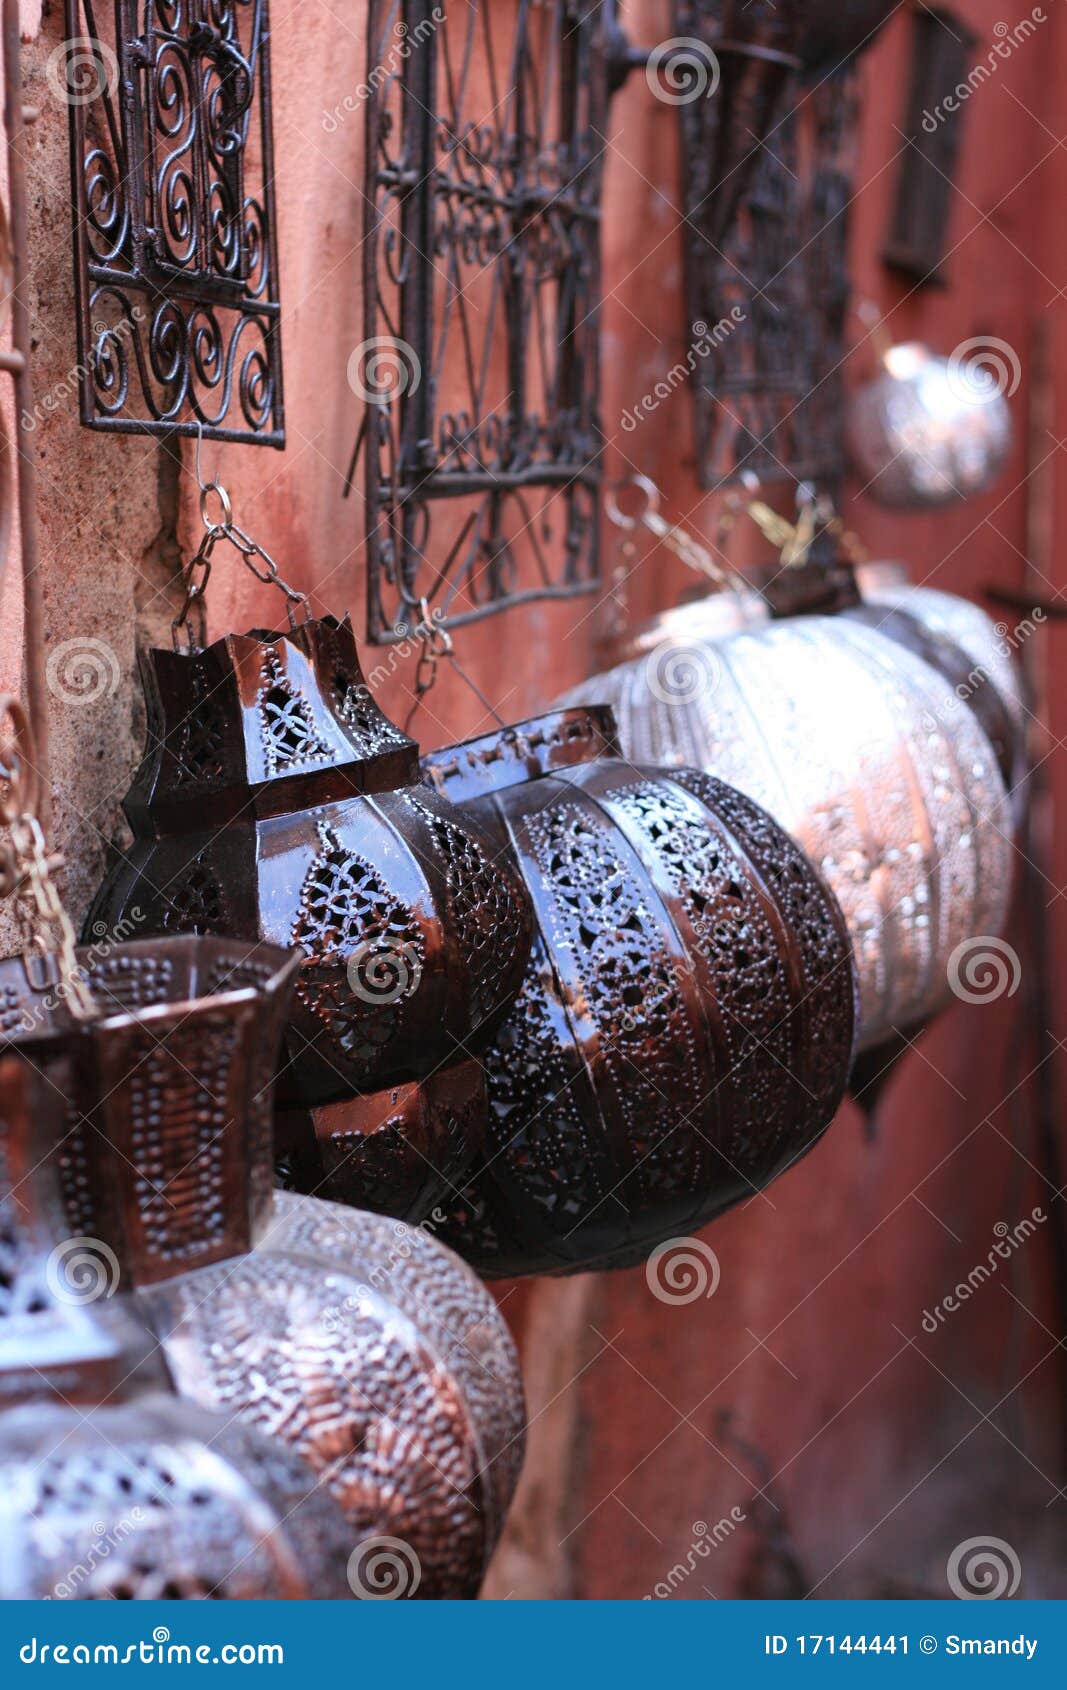 arabic lamps on walls, bazaar, in souk